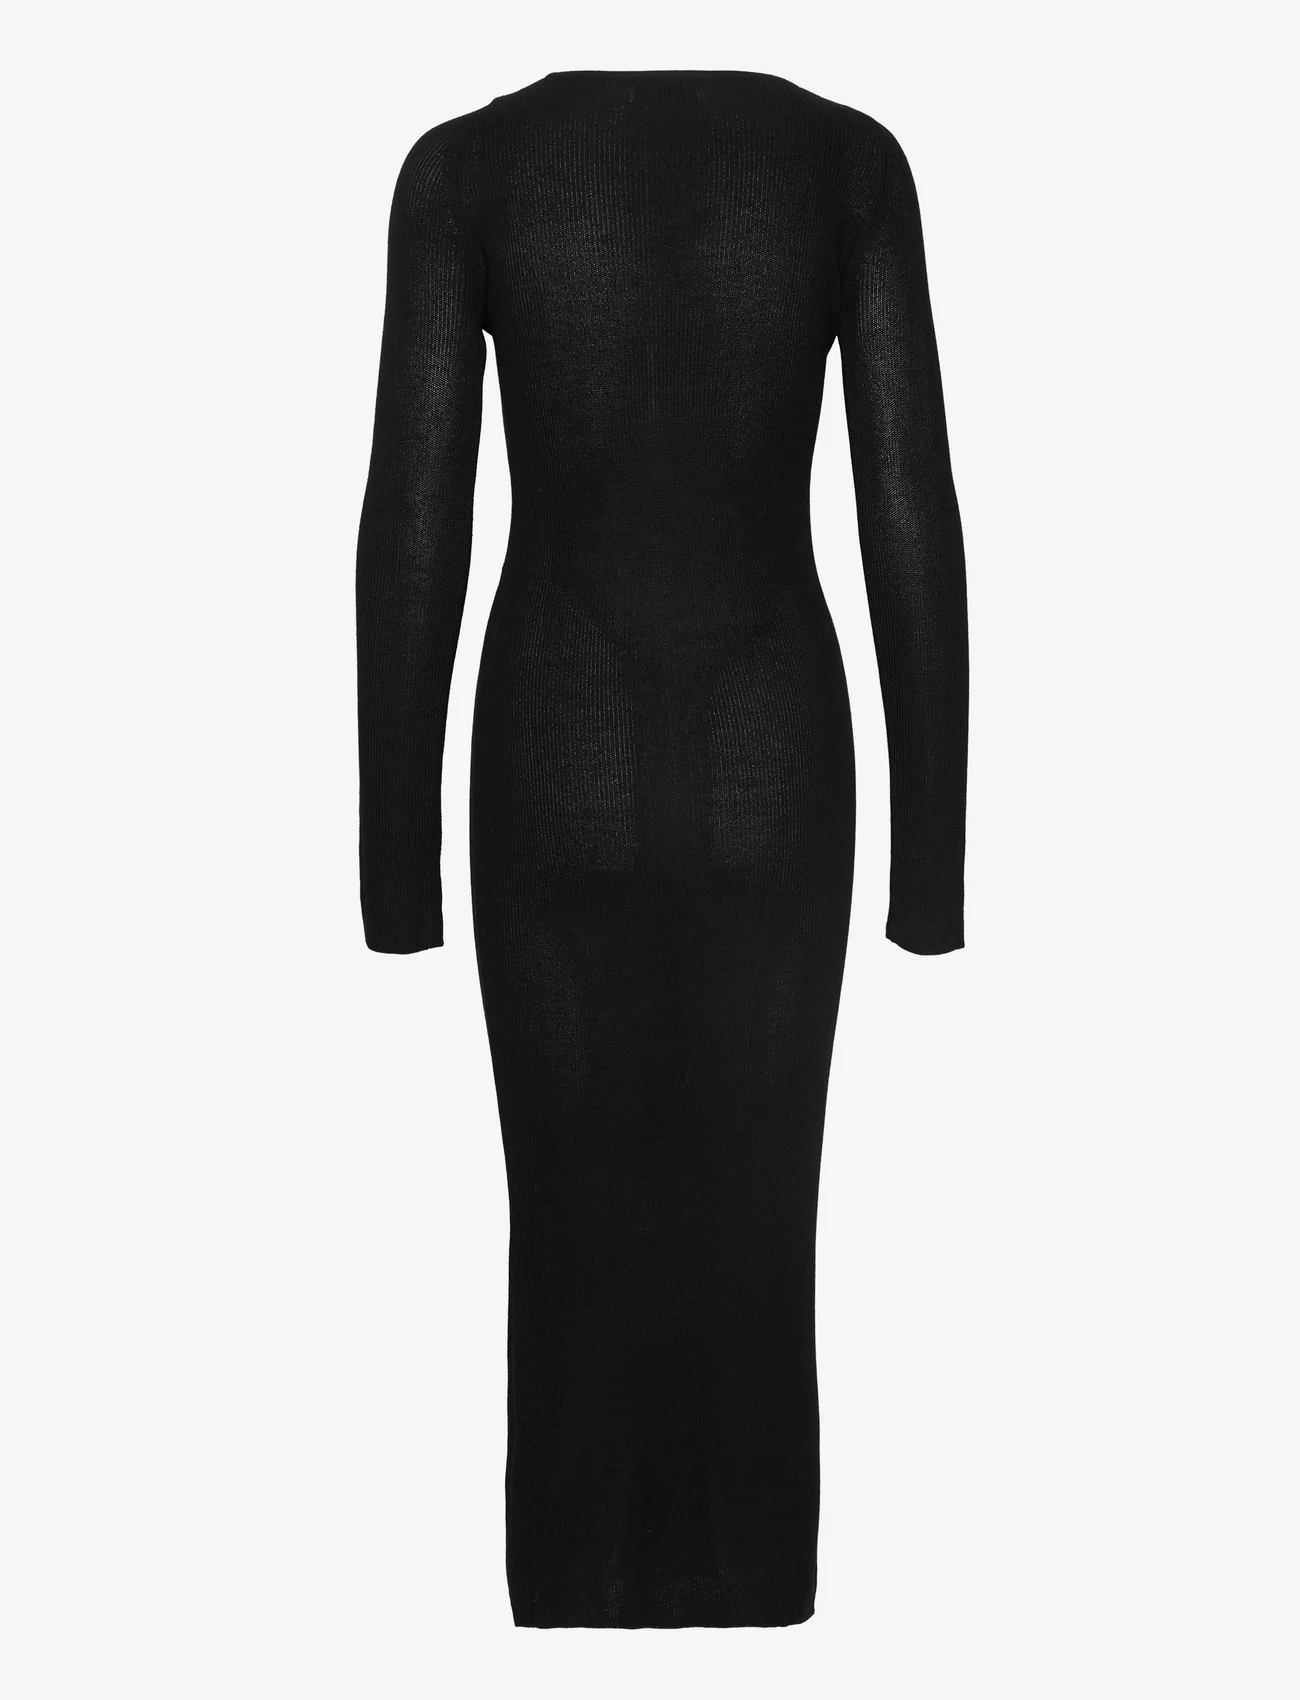 Envii - ENOIL LS DRESS 6911 - liibuvad kleidid - black - 1